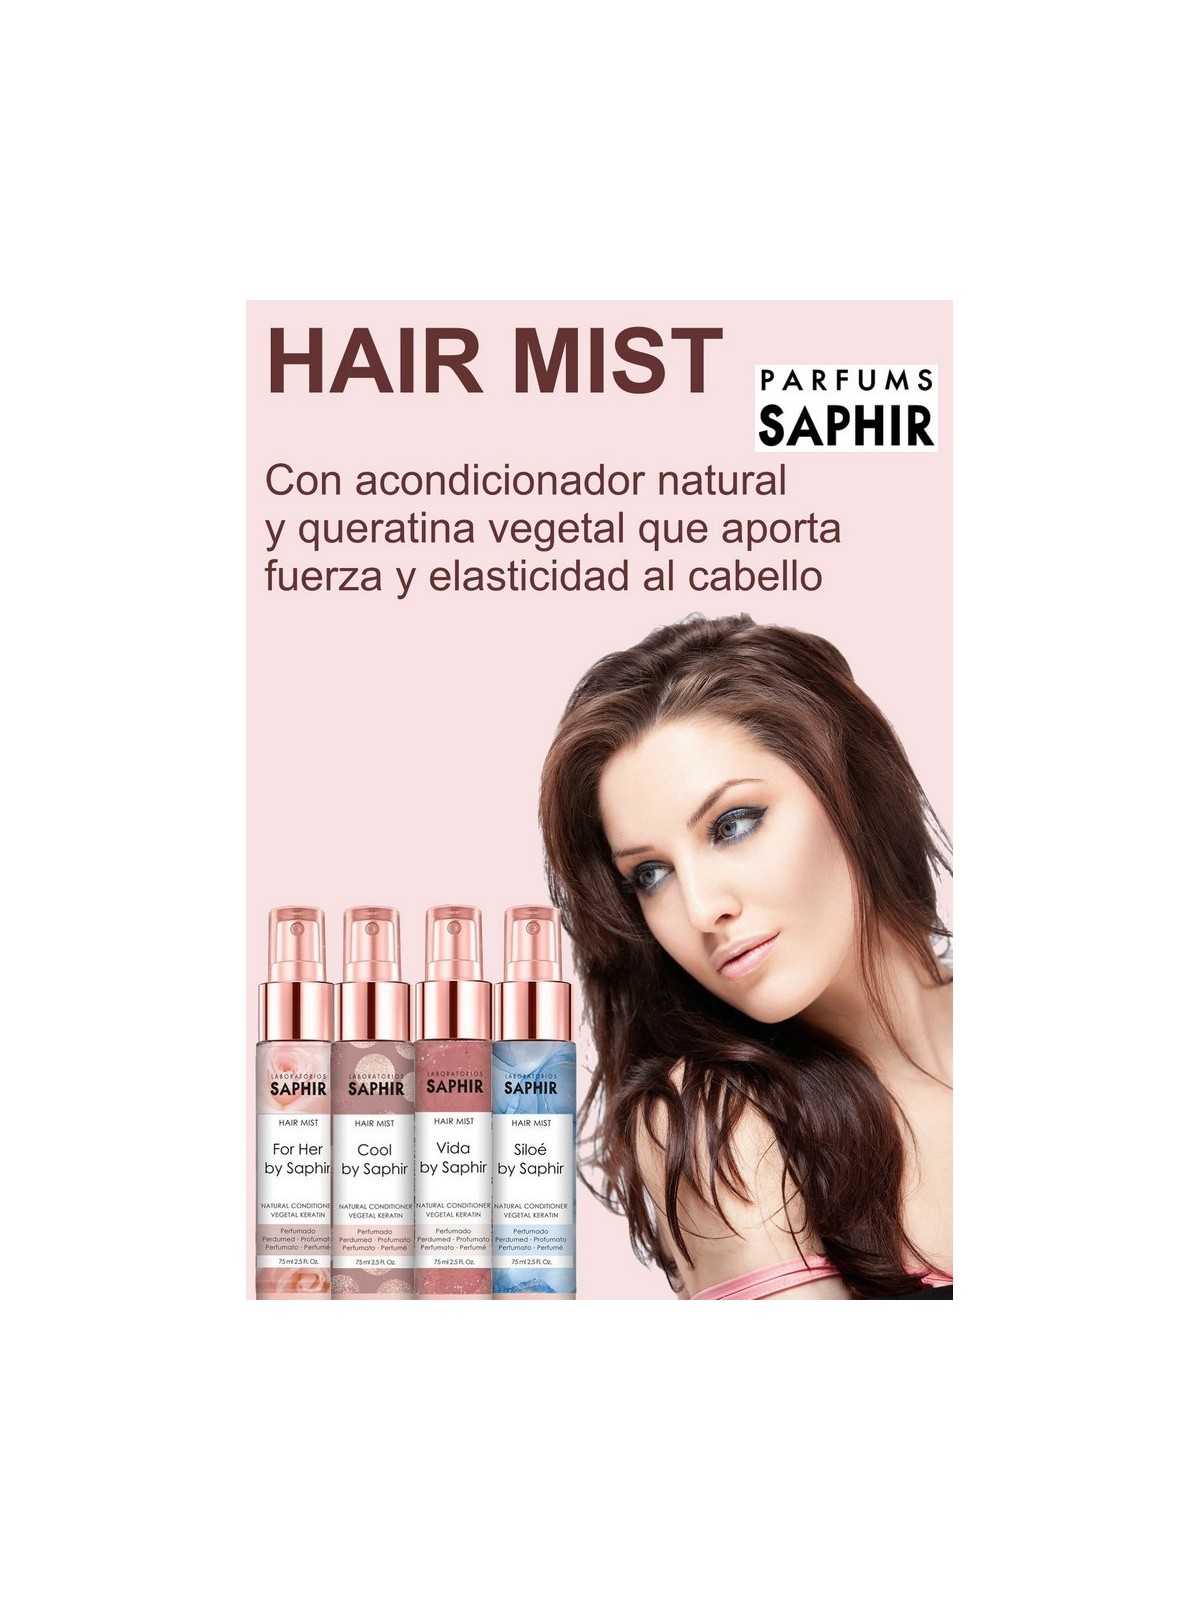 Comprar Saphir acondicionador hair mist Cool by Saphir 75ml en Inicio por sólo 2,99 € o un precio específico de 2,99 € en Thalie Care